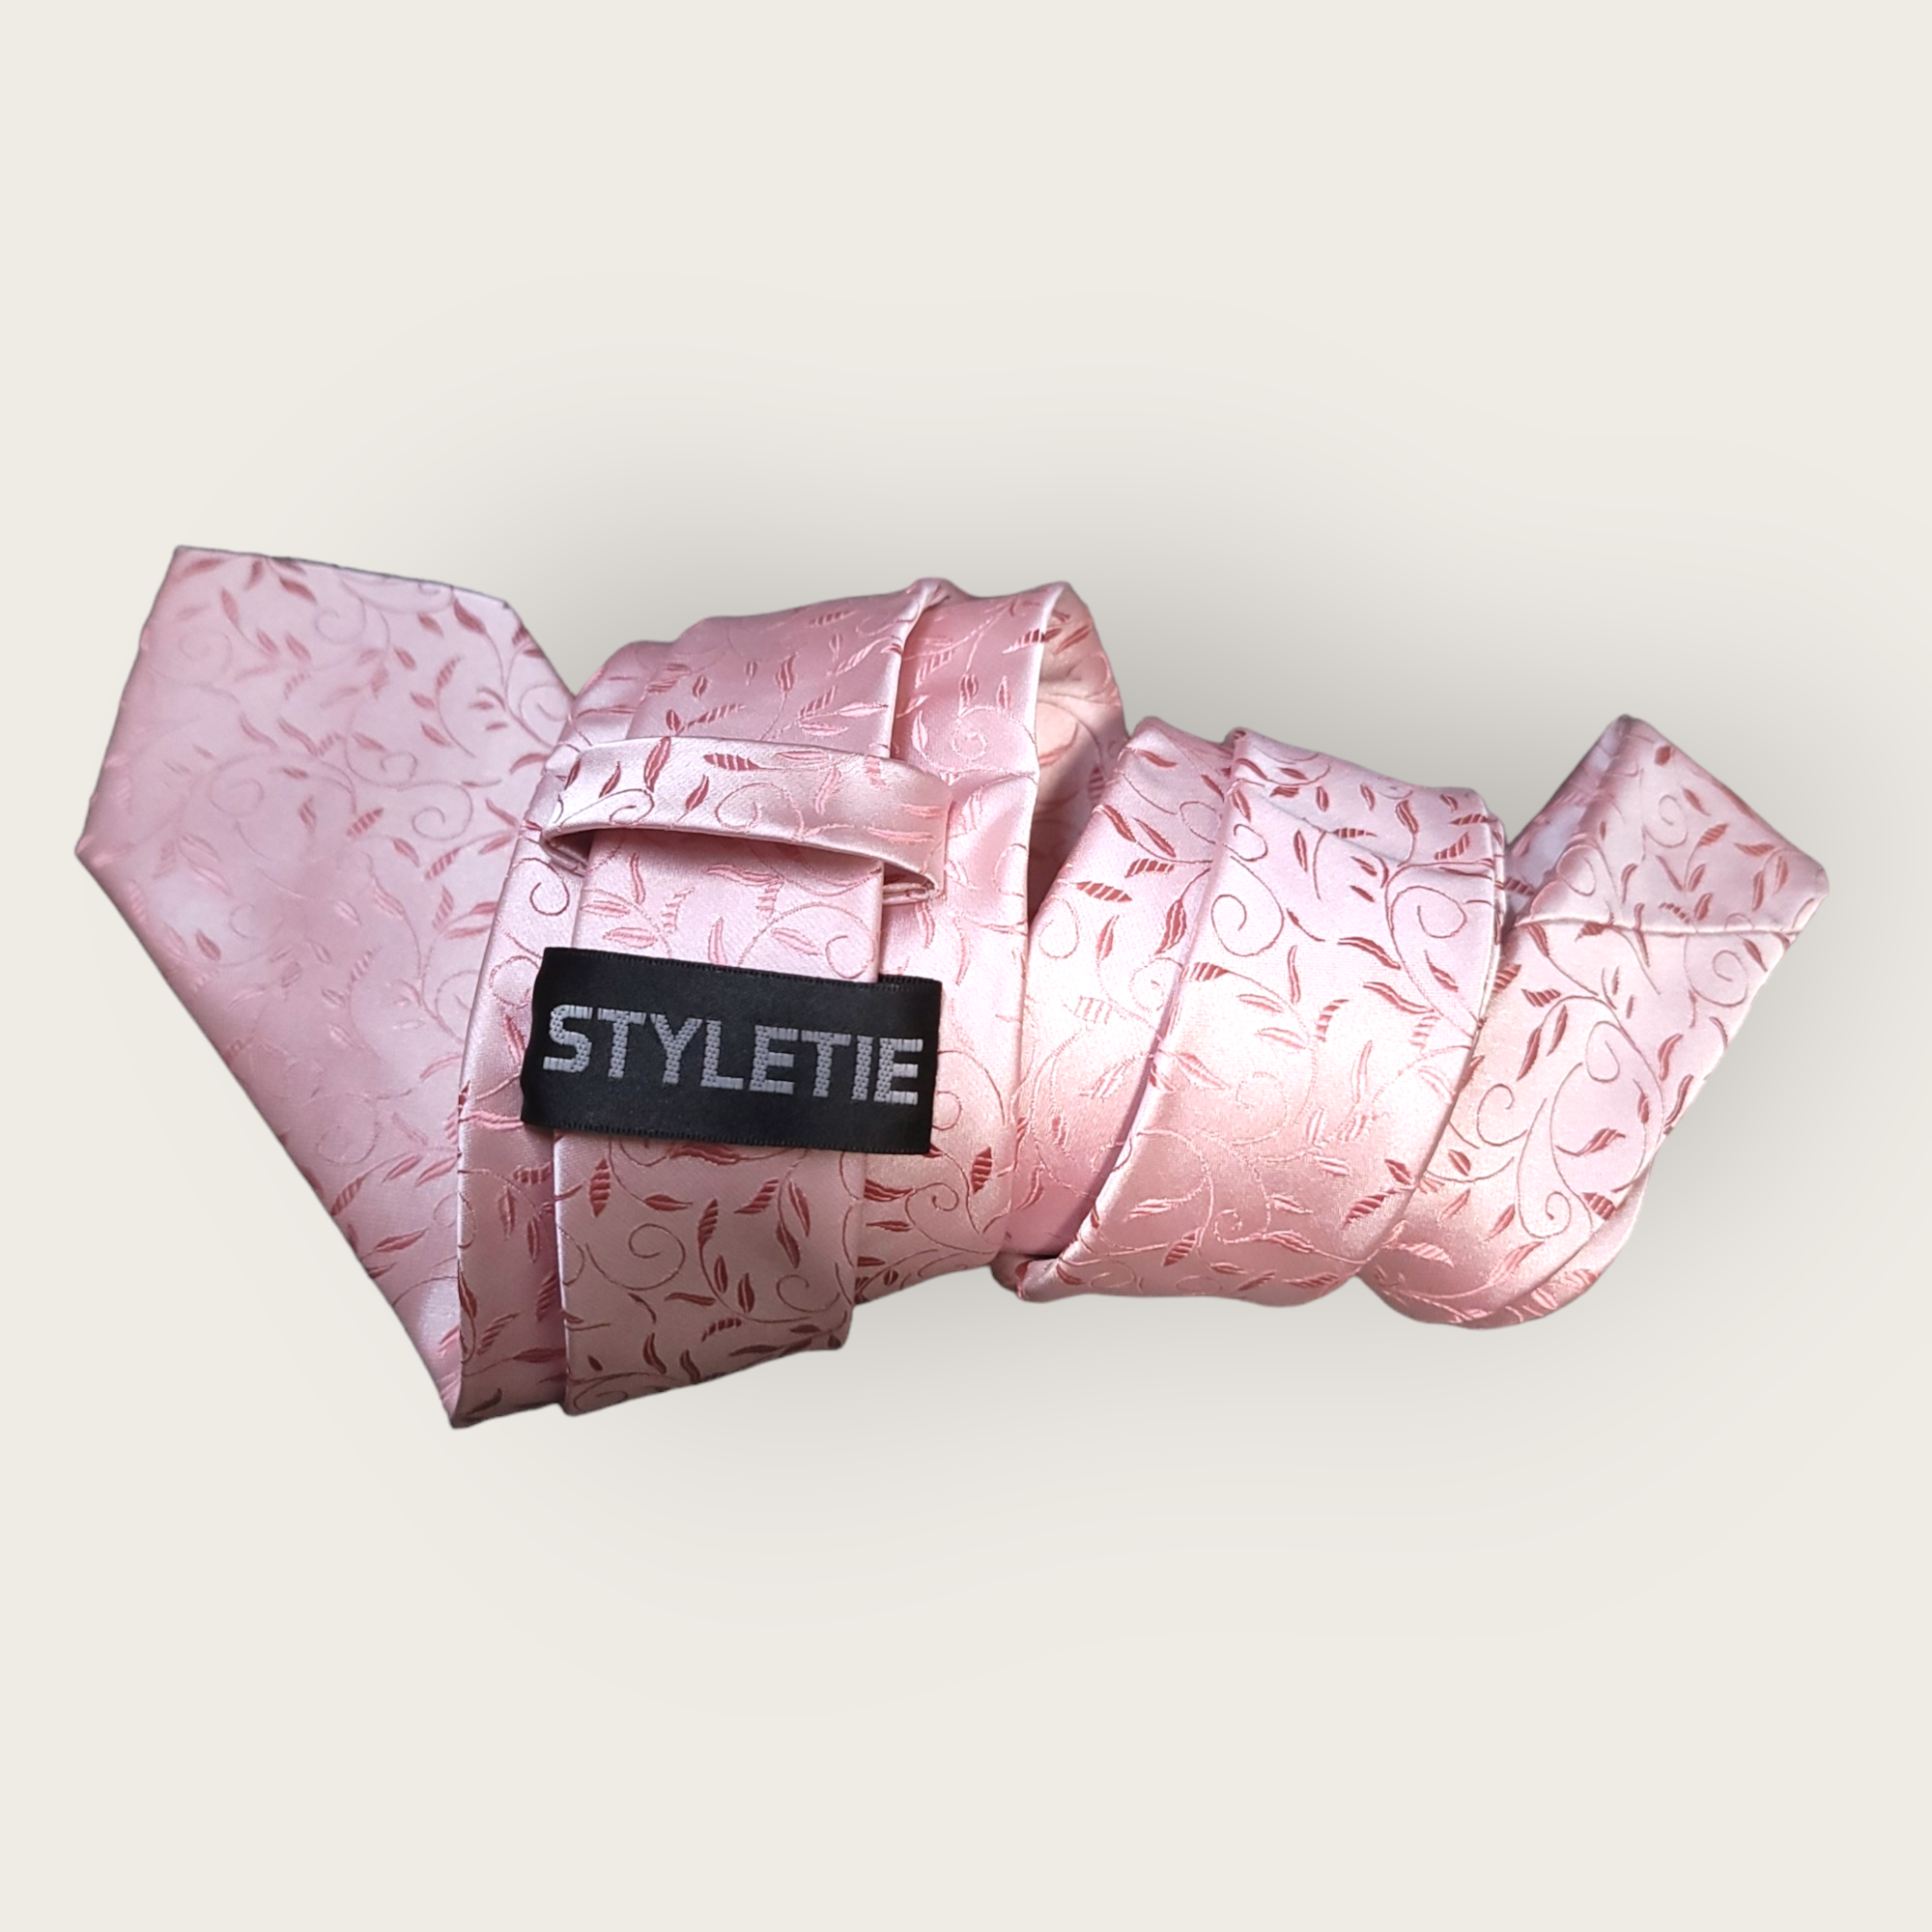 Pink Leaf Floral Silk Tie Pocket Square Cufflink Set